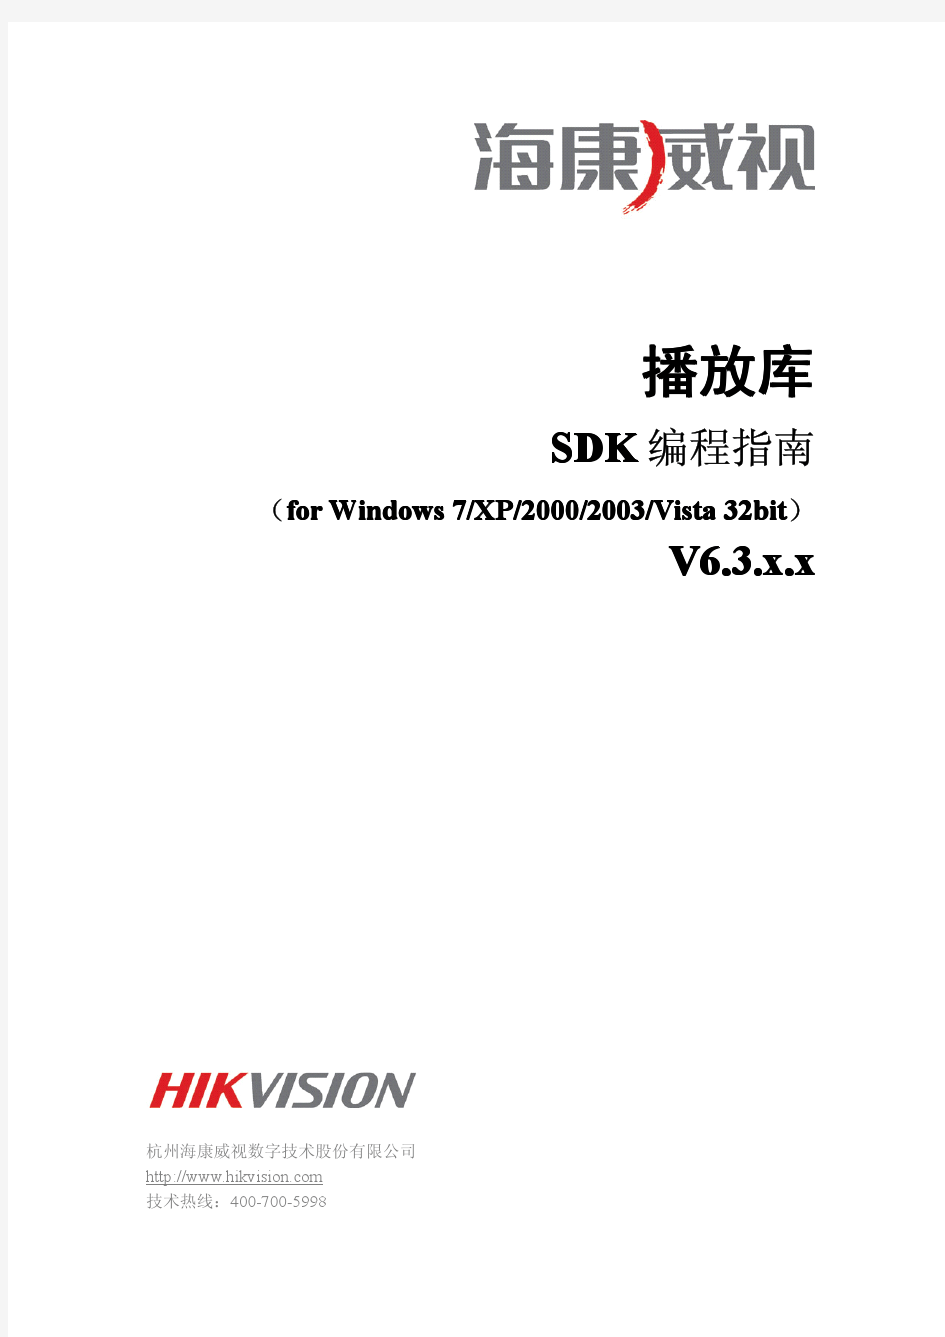 播放库SDK编程指南(for Windows)V6.3.2.x